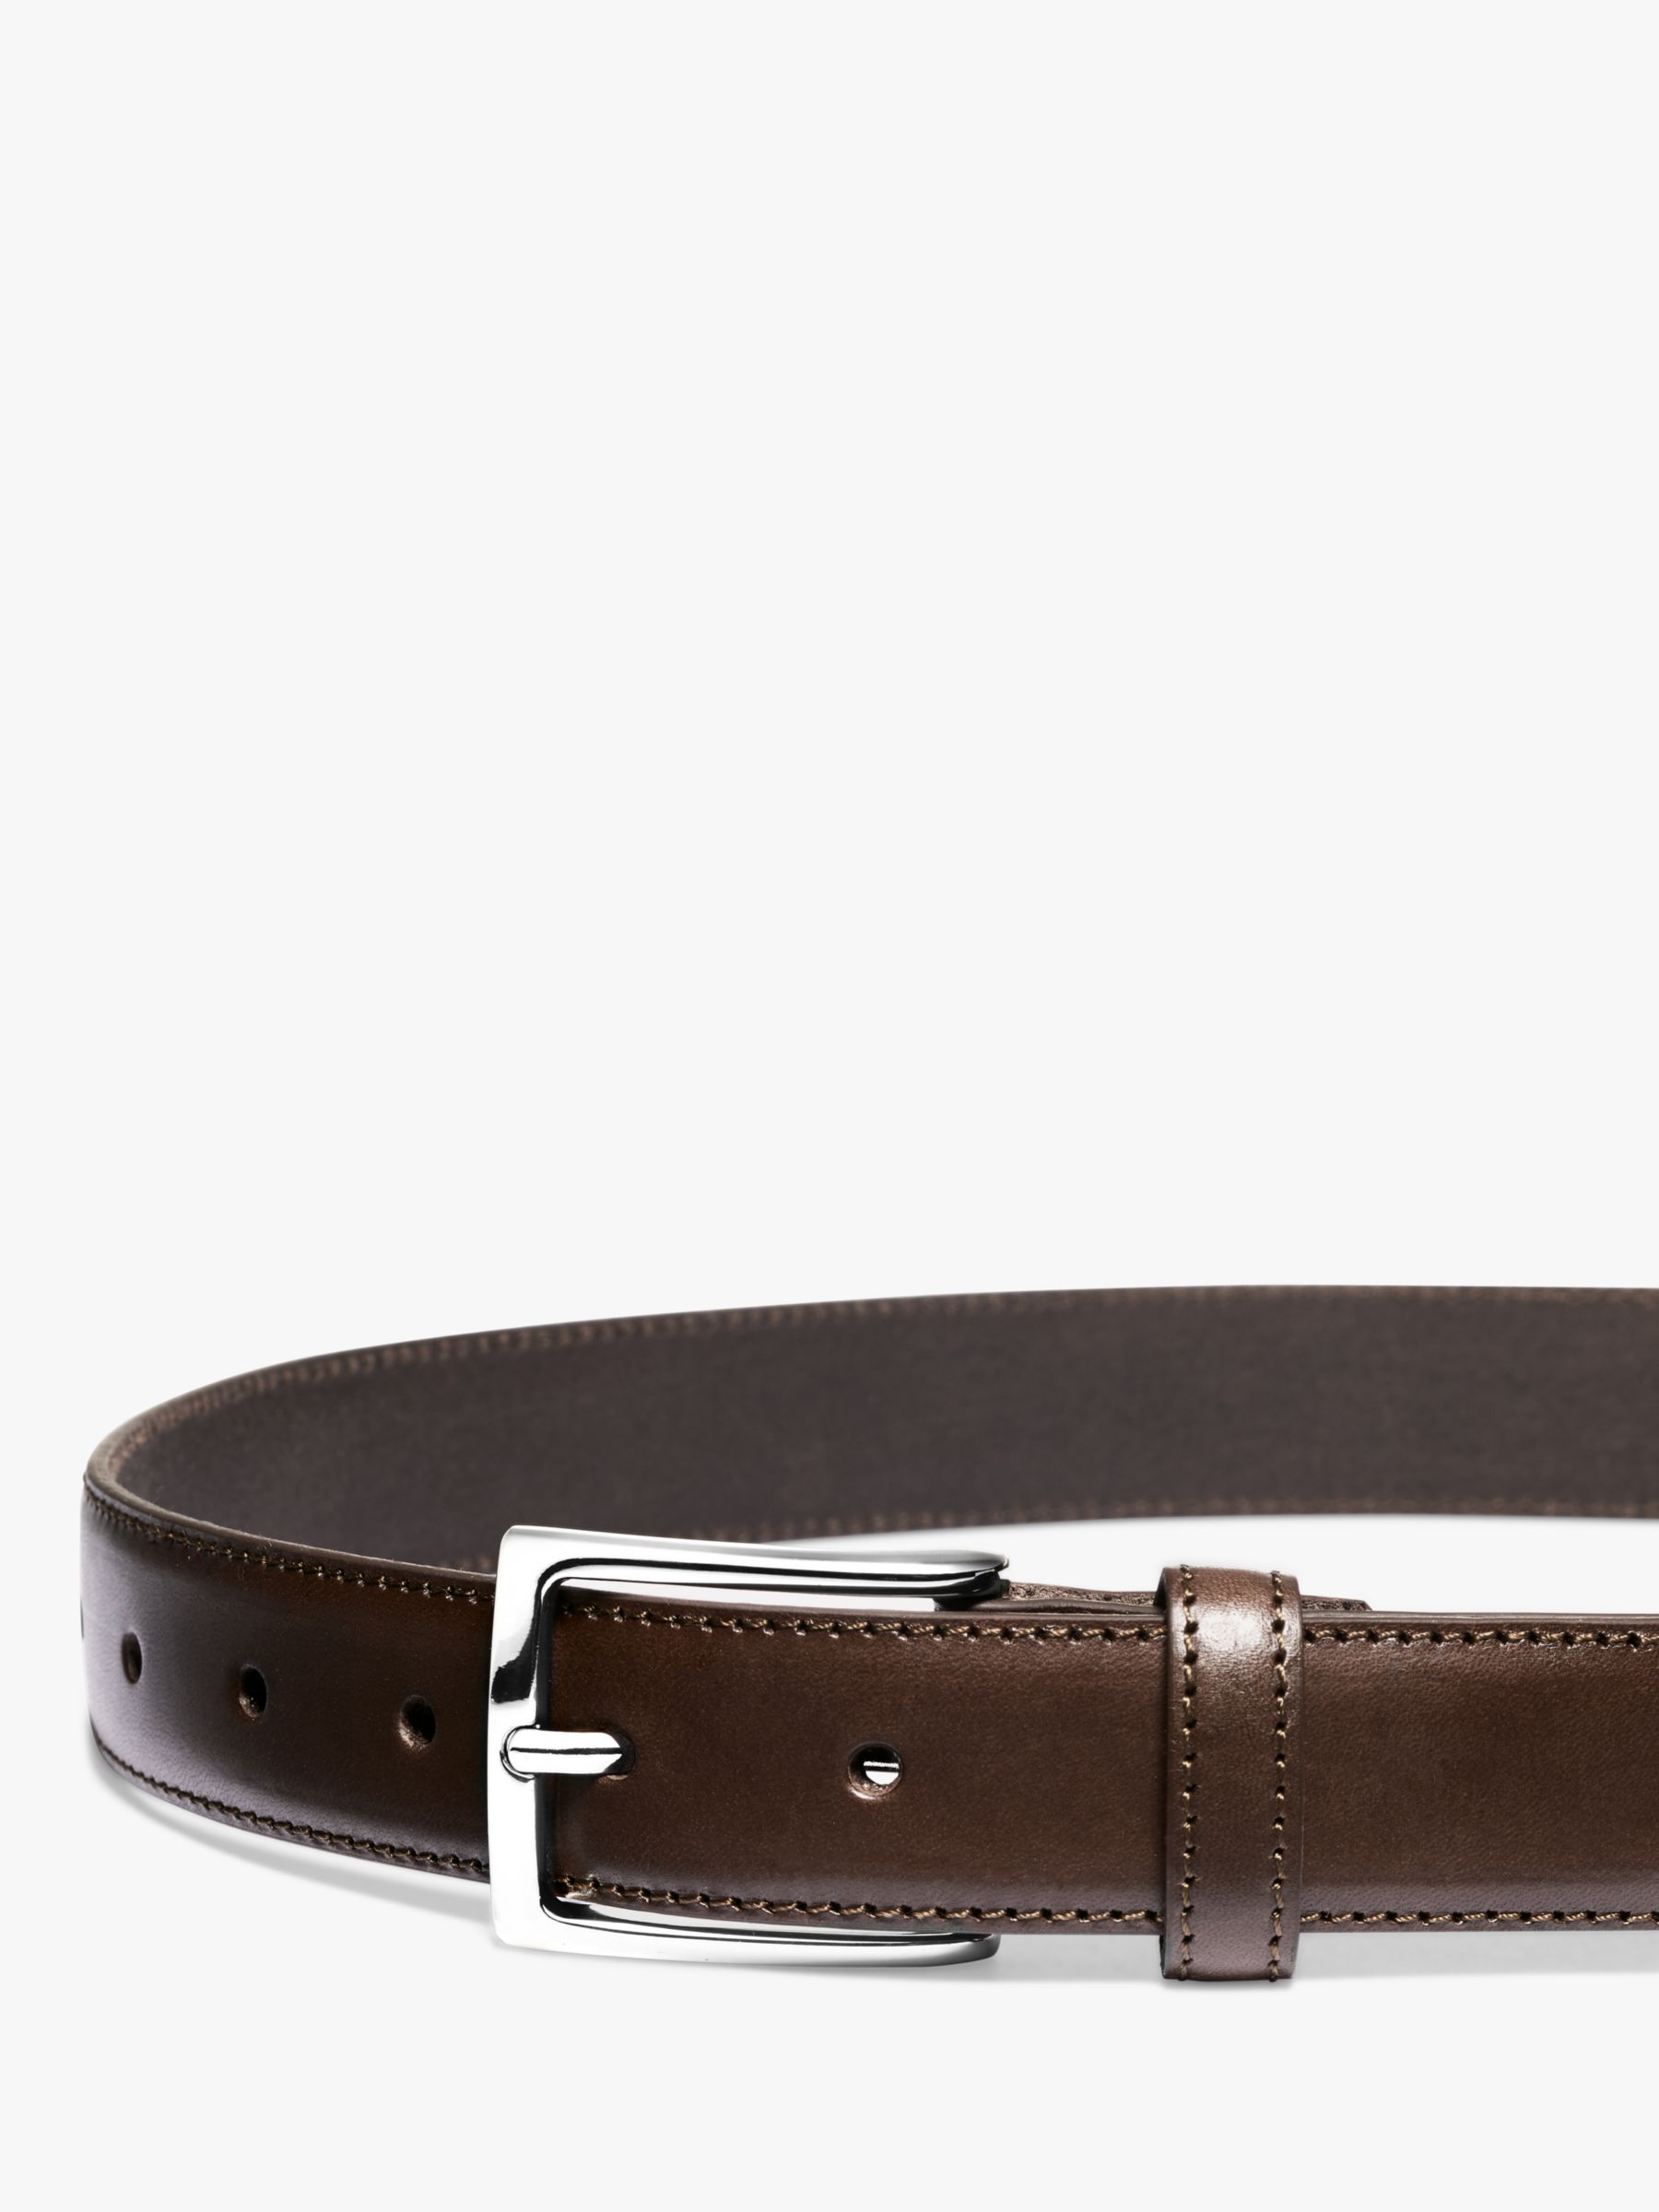 Belts for Men - Buy Leather Belt for Men Online